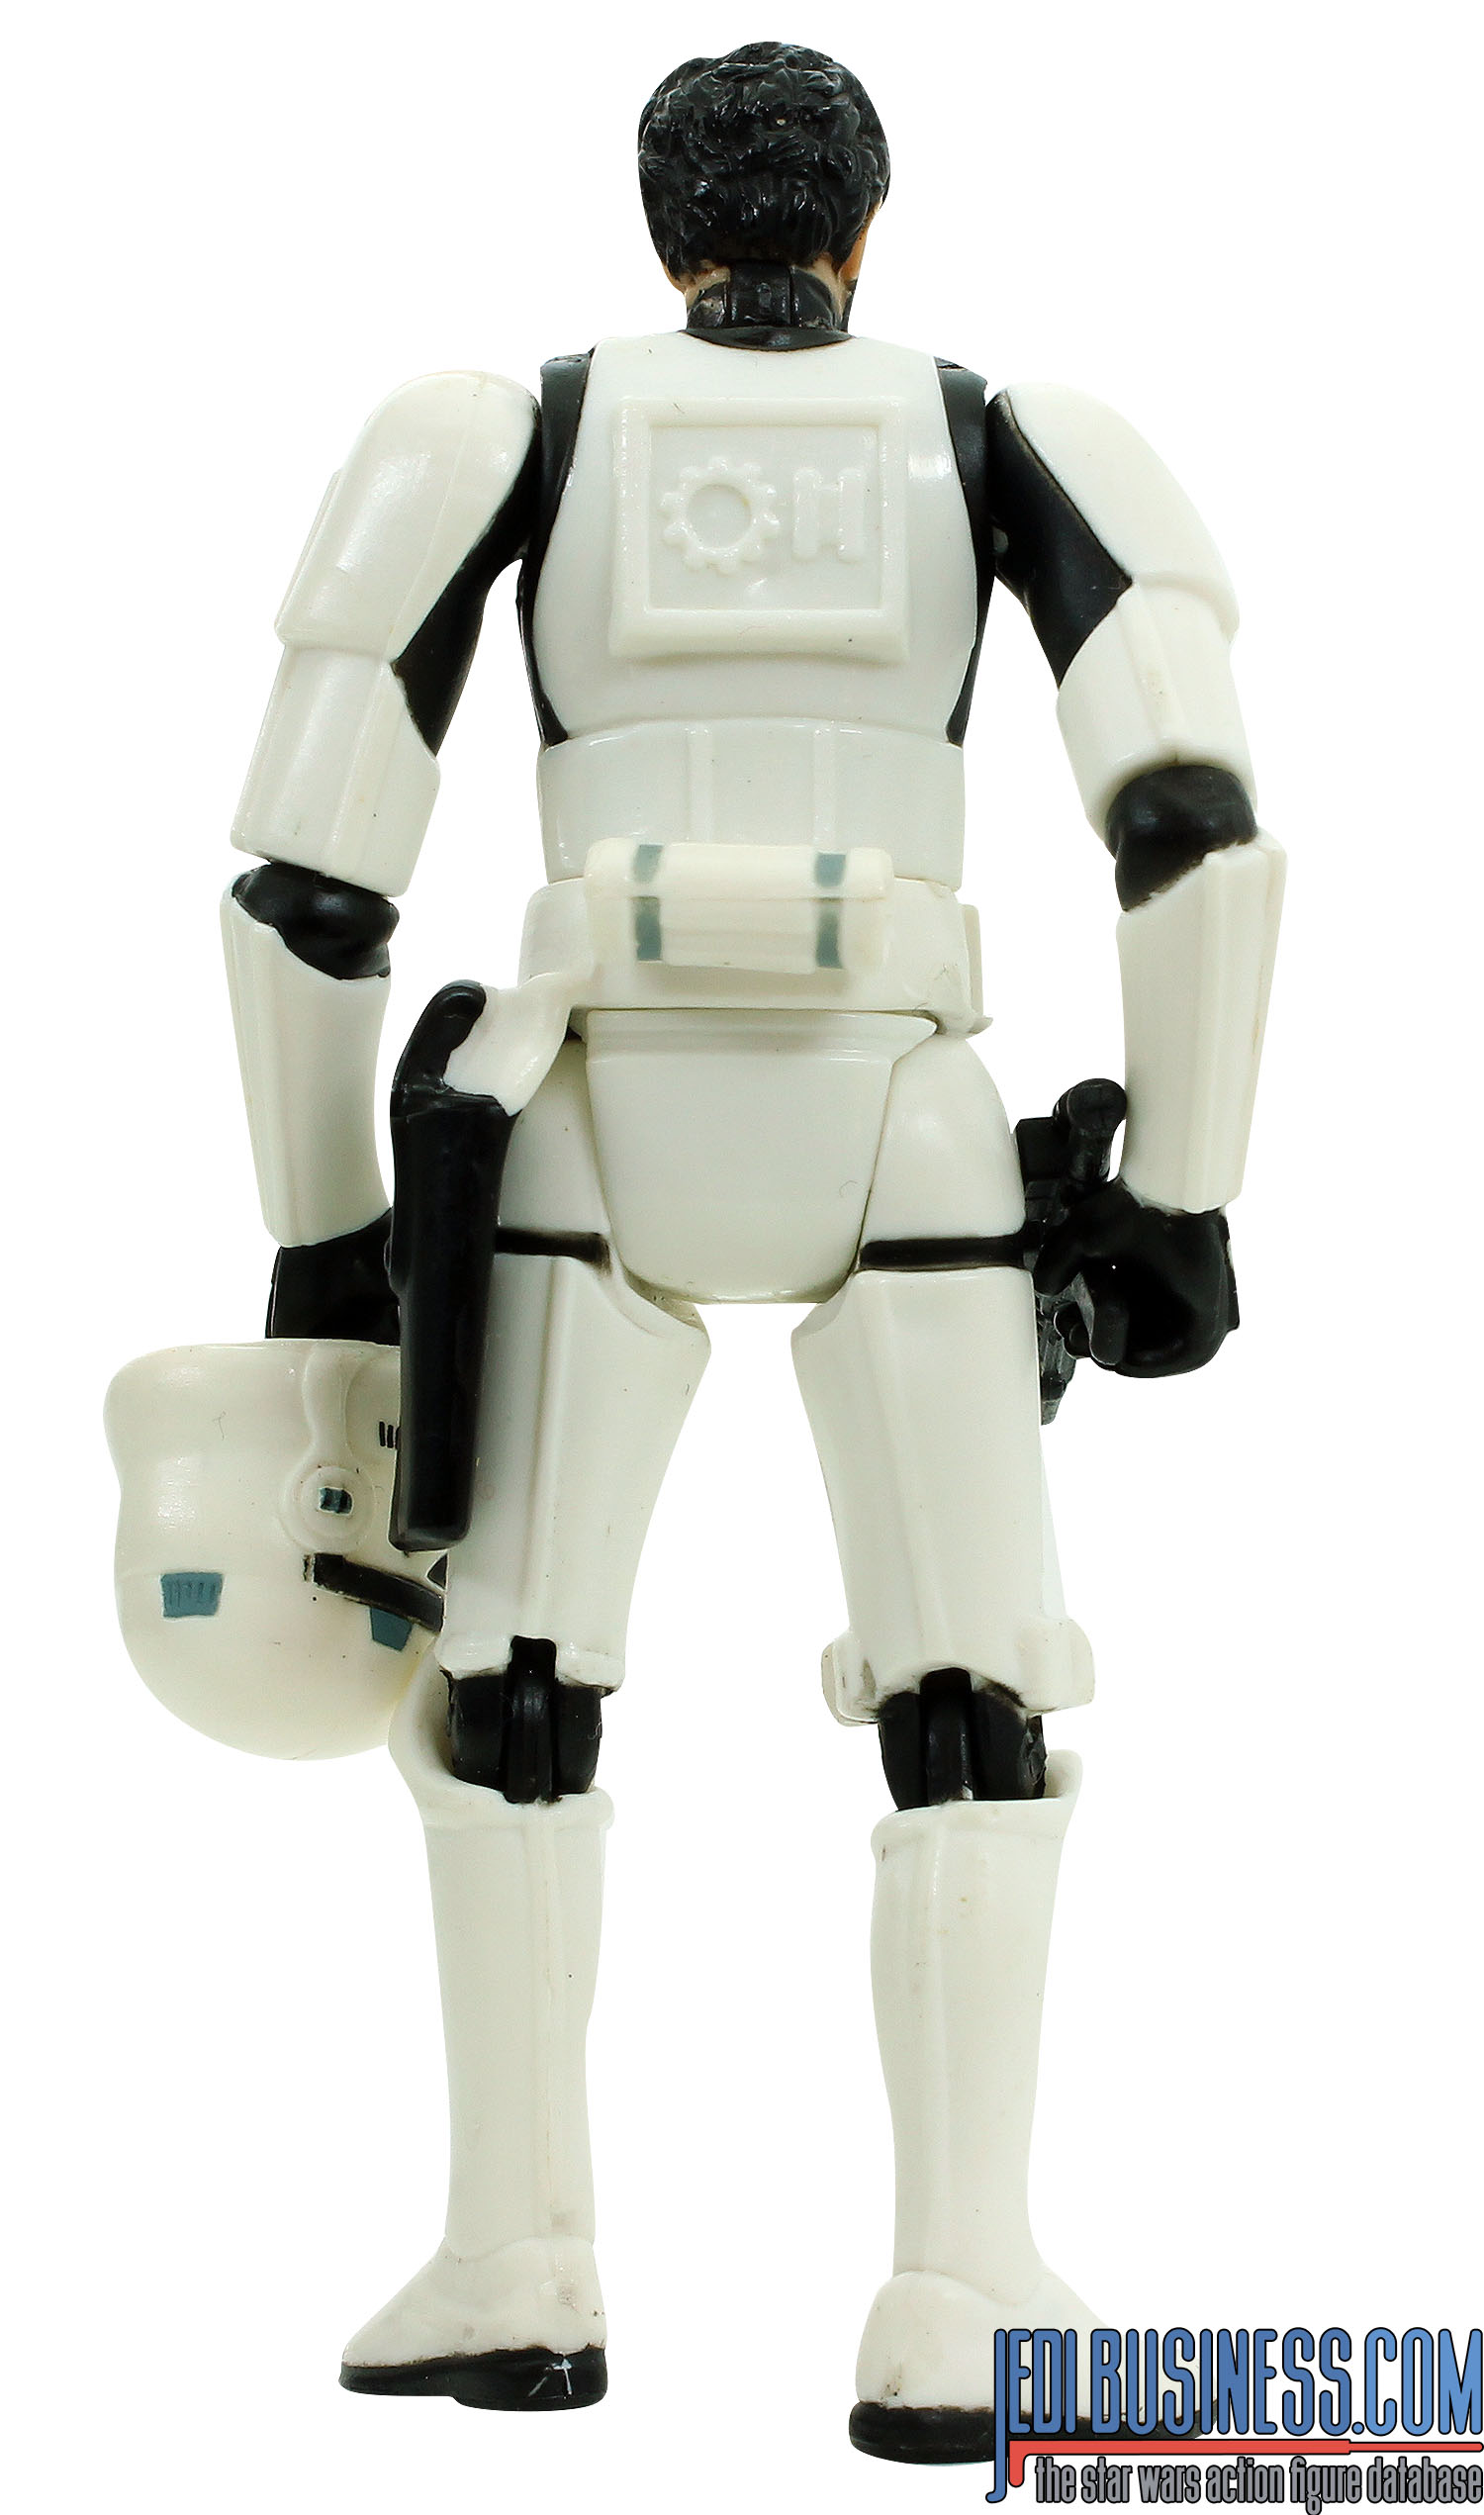 George Lucas In Stormtrooper Disguise